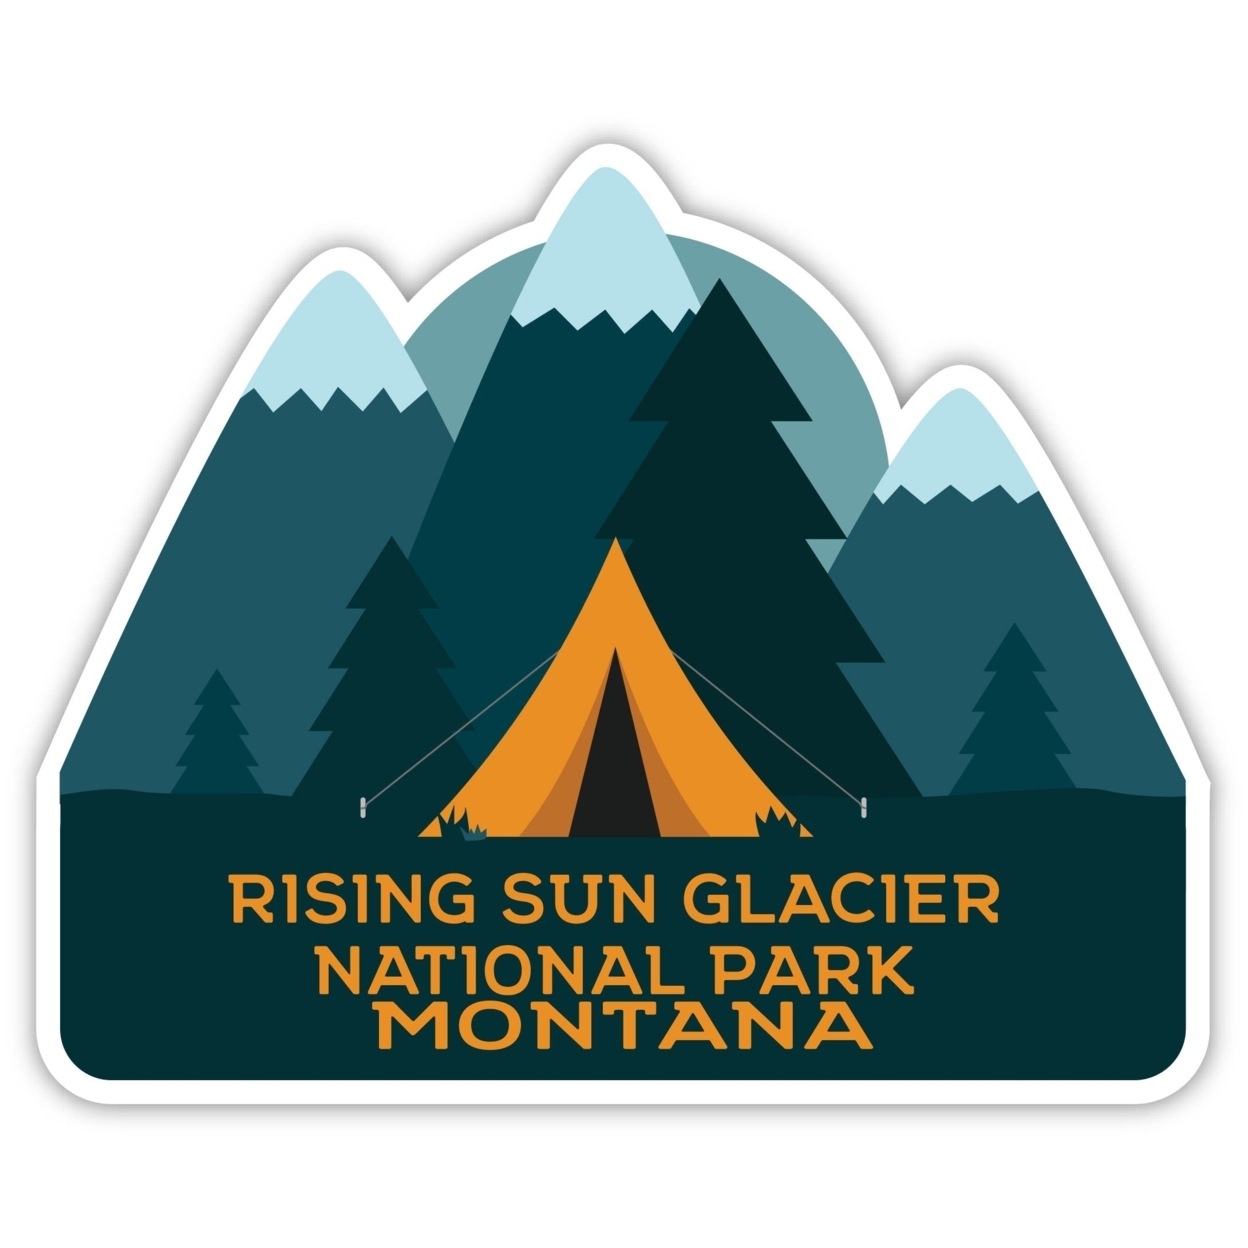 Rising Sun Glacier National Park Montana Souvenir Decorative Stickers (Choose Theme And Size) - Single Unit, 4-Inch, Tent